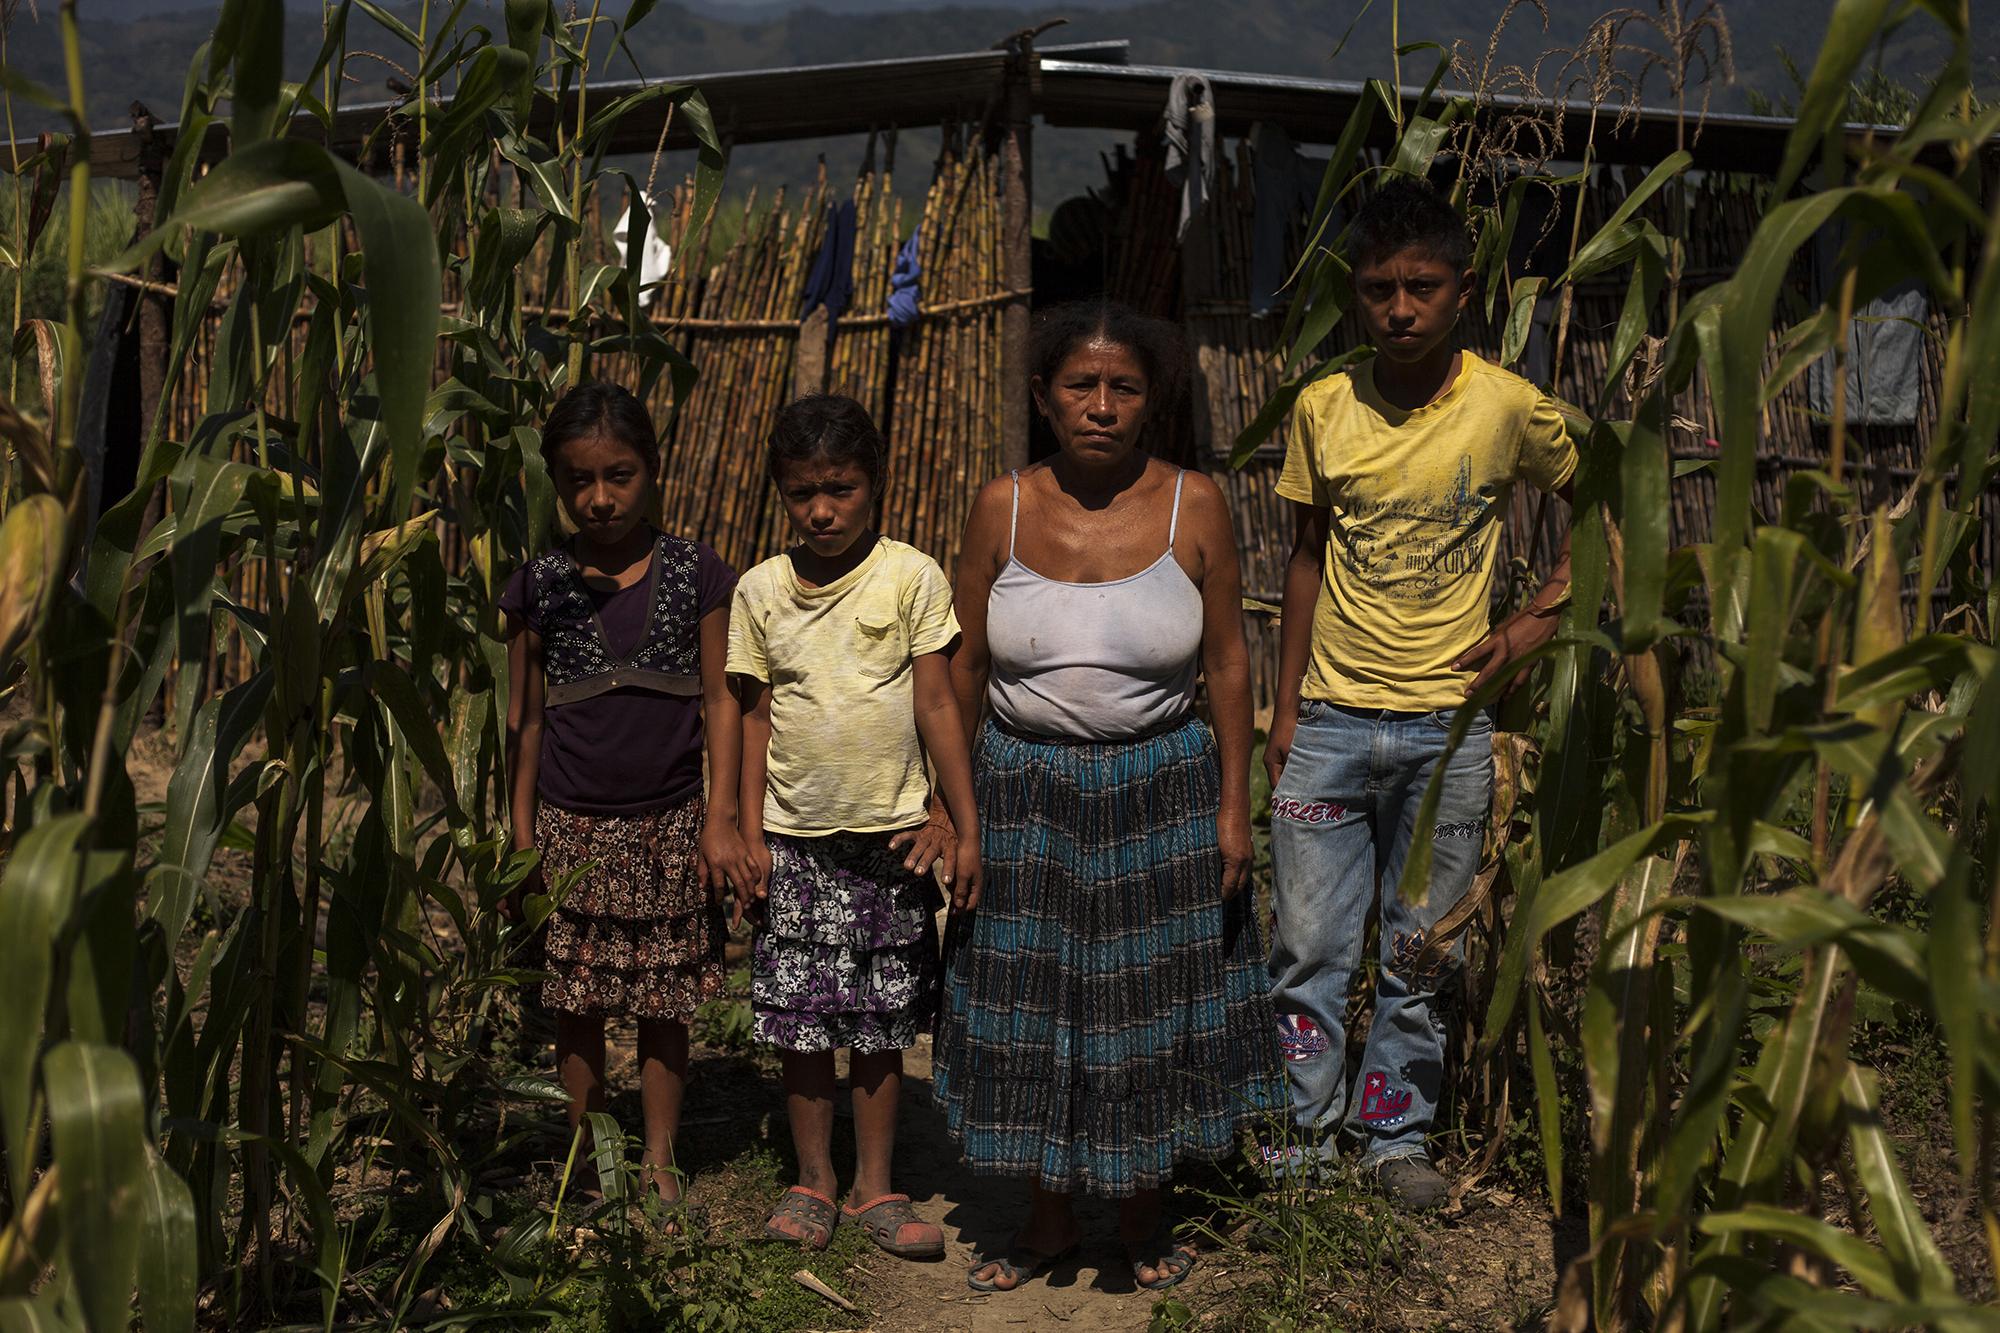 Cecilia Ichic Caal, de 48 años, posa junto a su familia en el Valle de Polochic, en el altiplano guatemalteco. Ella fue desalojada violentamente por policías, soldados y guardias de seguridad privada, junto a 750 familias, en 2011, porque el ingenio Chabil Utzaj reclamaba esas tierras como suyas. La Comisión Interamericana de Derechos Humanos resolvió que el desalojo fue ilegal. El Estado debe proveerles un hogar estable, pero eso no es más que una promesa. Chabil Utzaj significa “buena caña” en q’eqchí. La casa de la señora Caal tiene suelo de tierra, y sus paredes están hechas con varas de caña vieja.